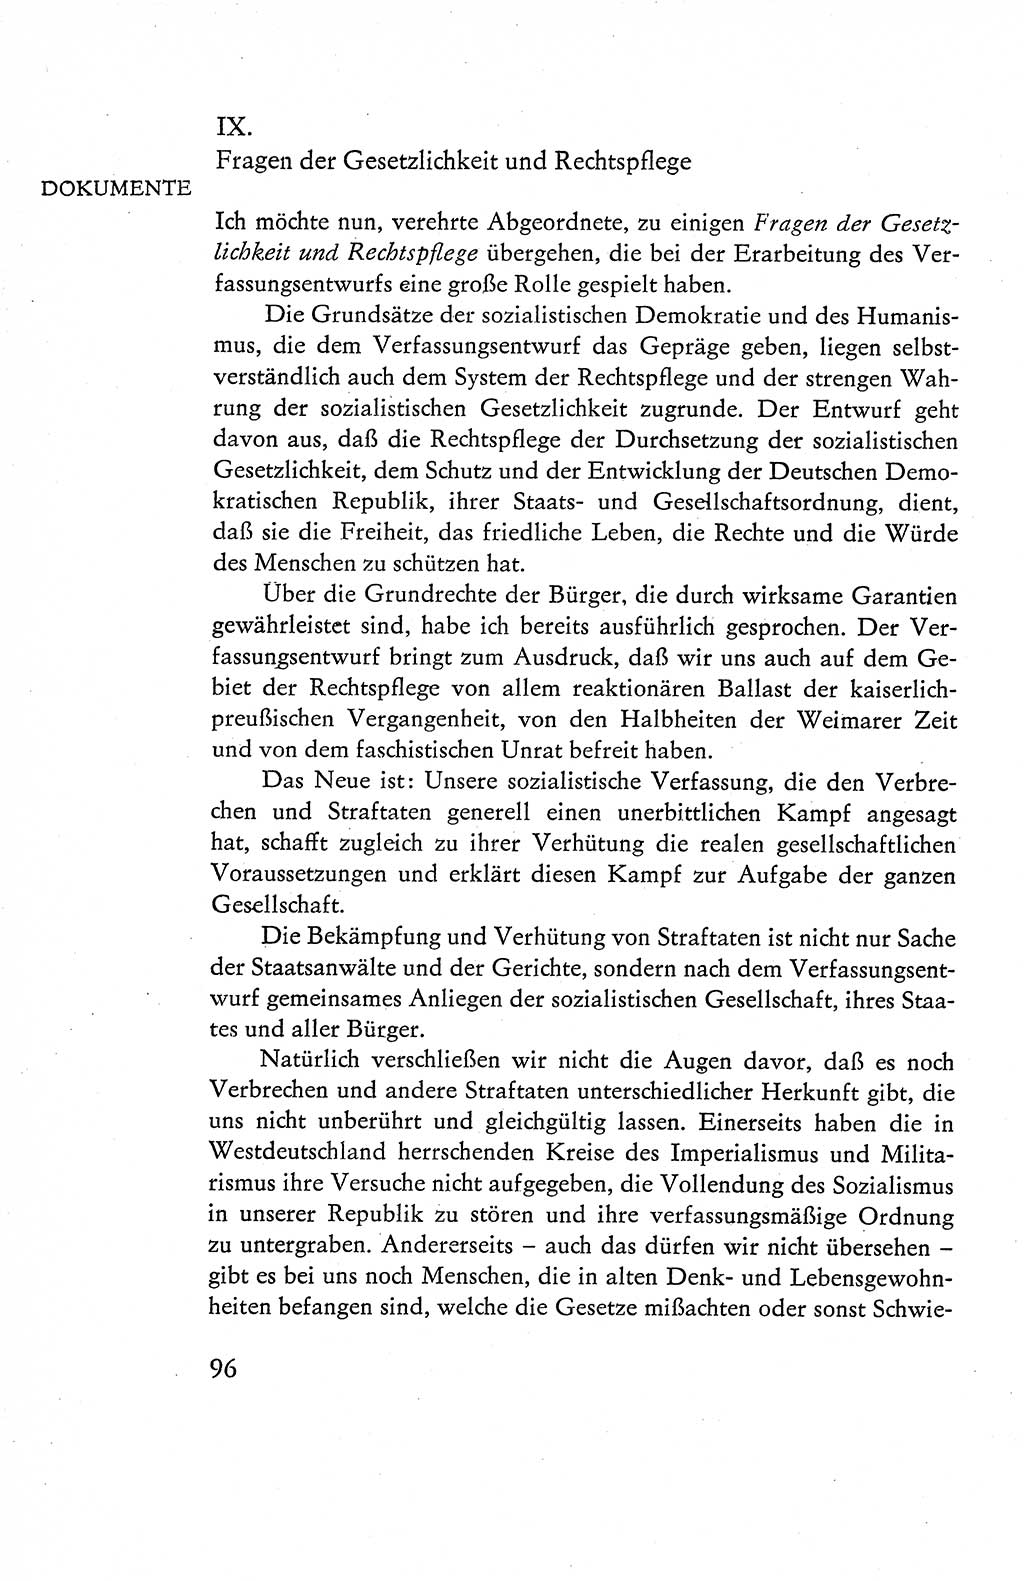 Verfassung der Deutschen Demokratischen Republik (DDR), Dokumente, Kommentar 1969, Band 1, Seite 96 (Verf. DDR Dok. Komm. 1969, Bd. 1, S. 96)